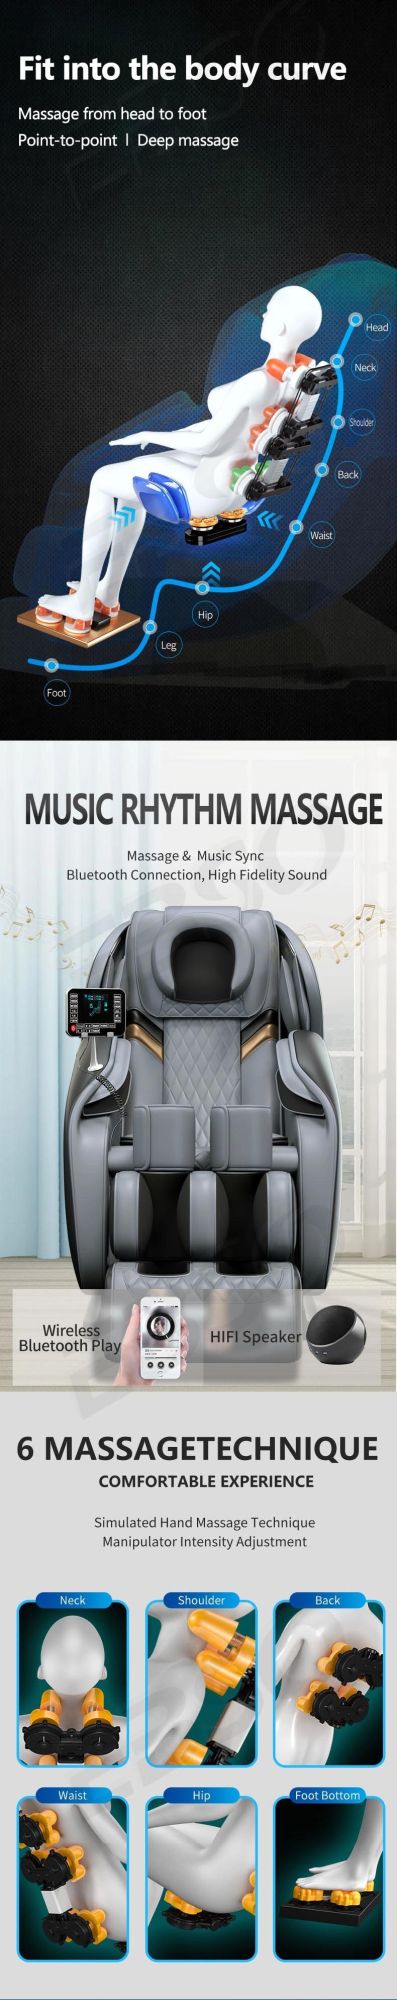 U Type Pillow Massage Chair Full Body Modern Design